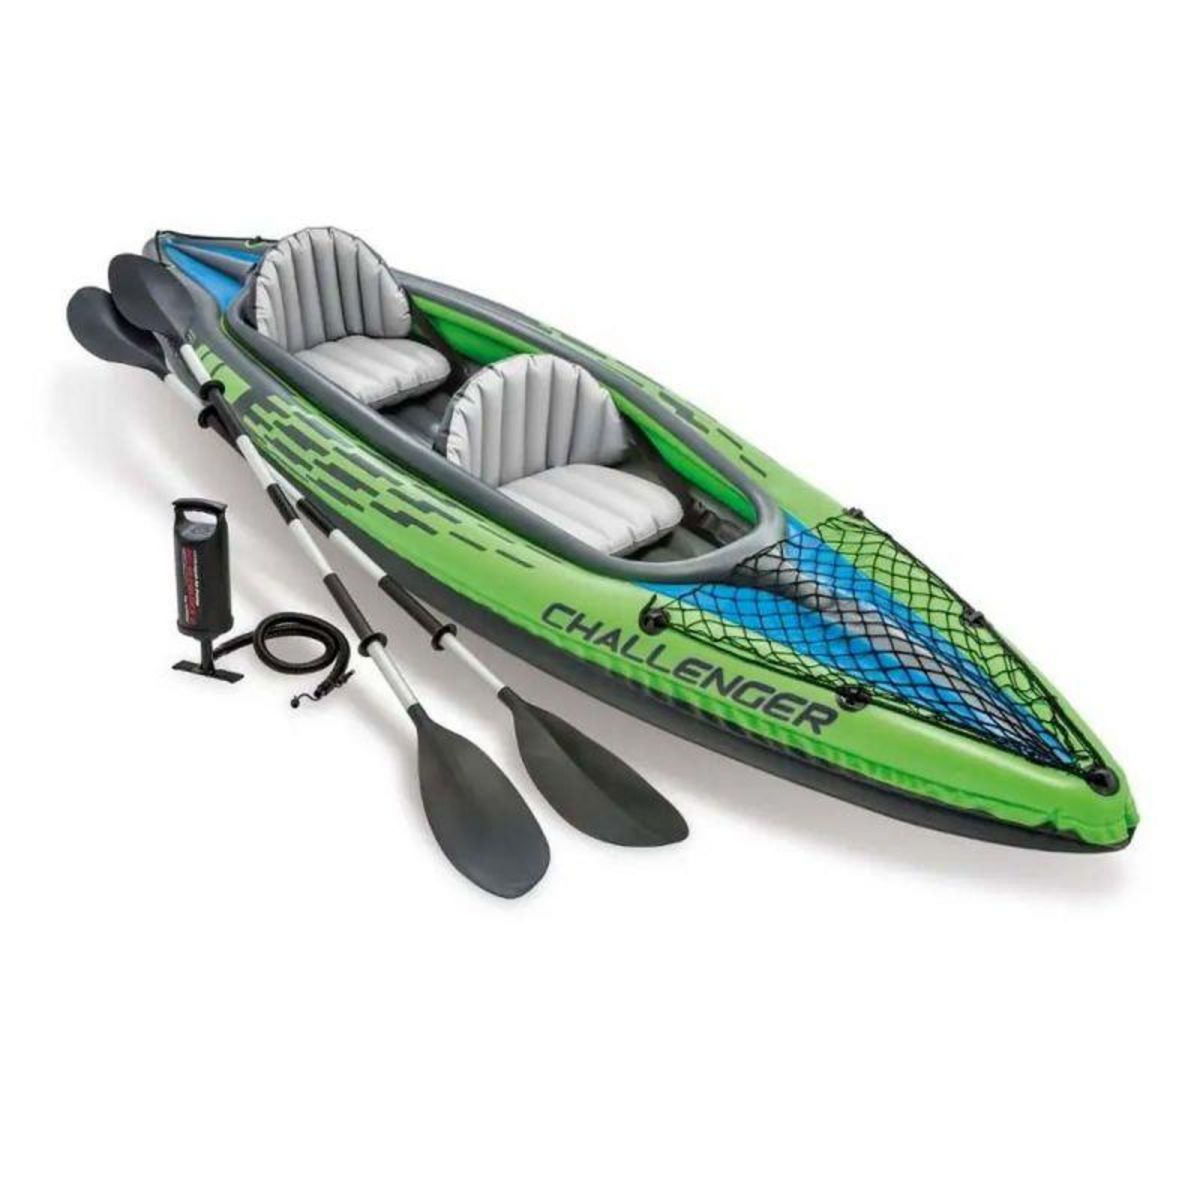  Kayak 2 Personnes  Challenger  351cm Vert & Bleu